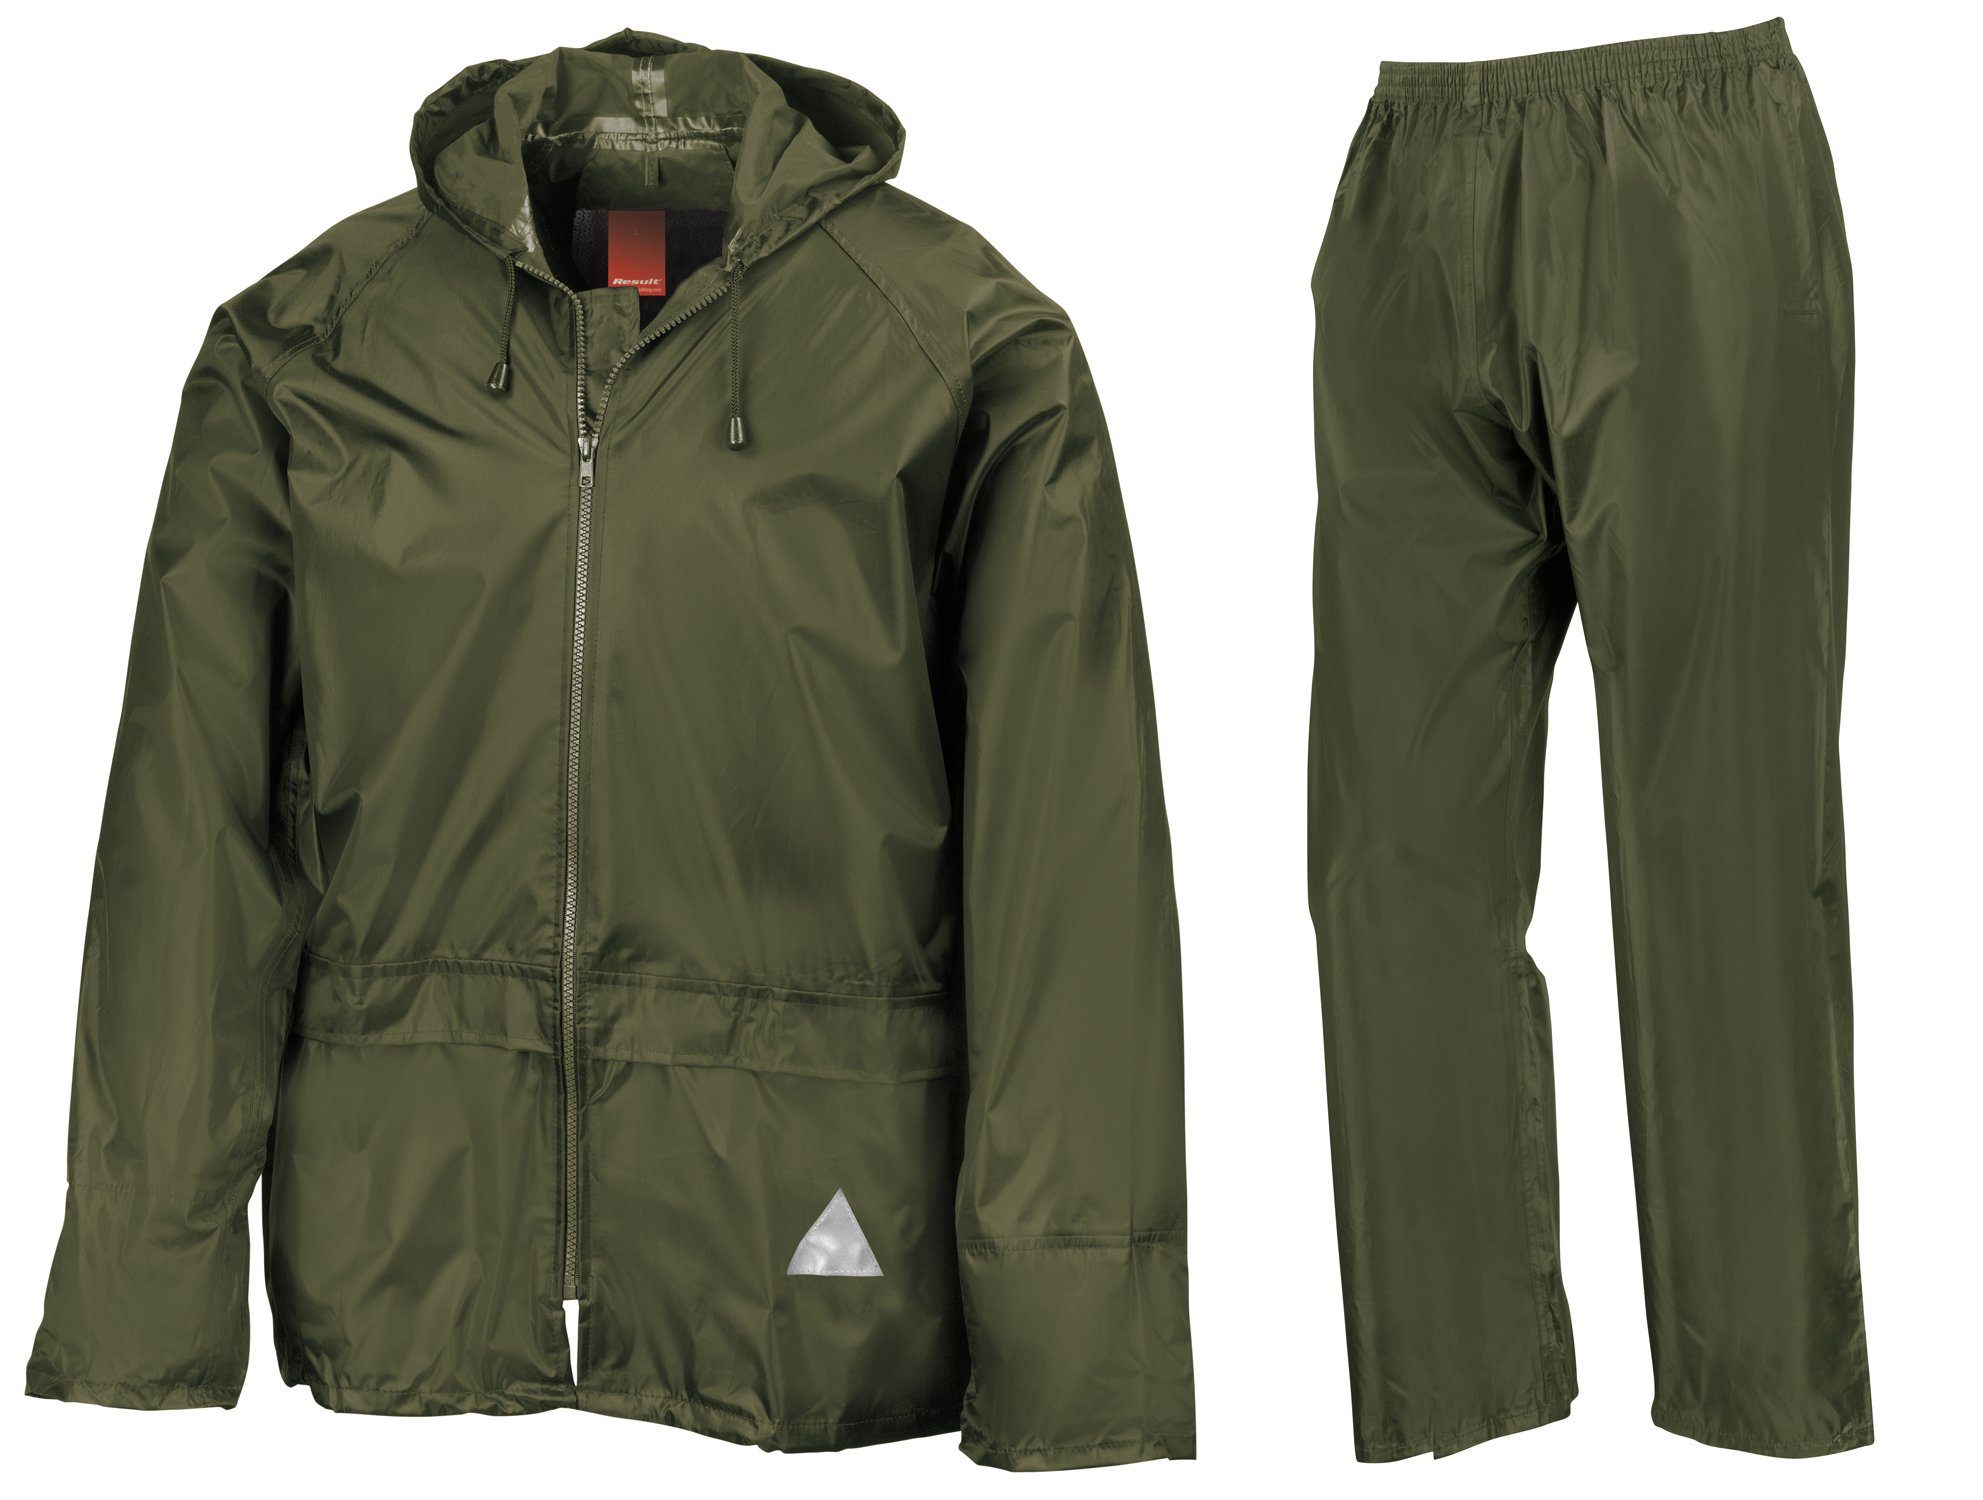 Result Regenanzug Jacke Anzug Set FaS95 Hose Regen Green Olive wasserdicht und